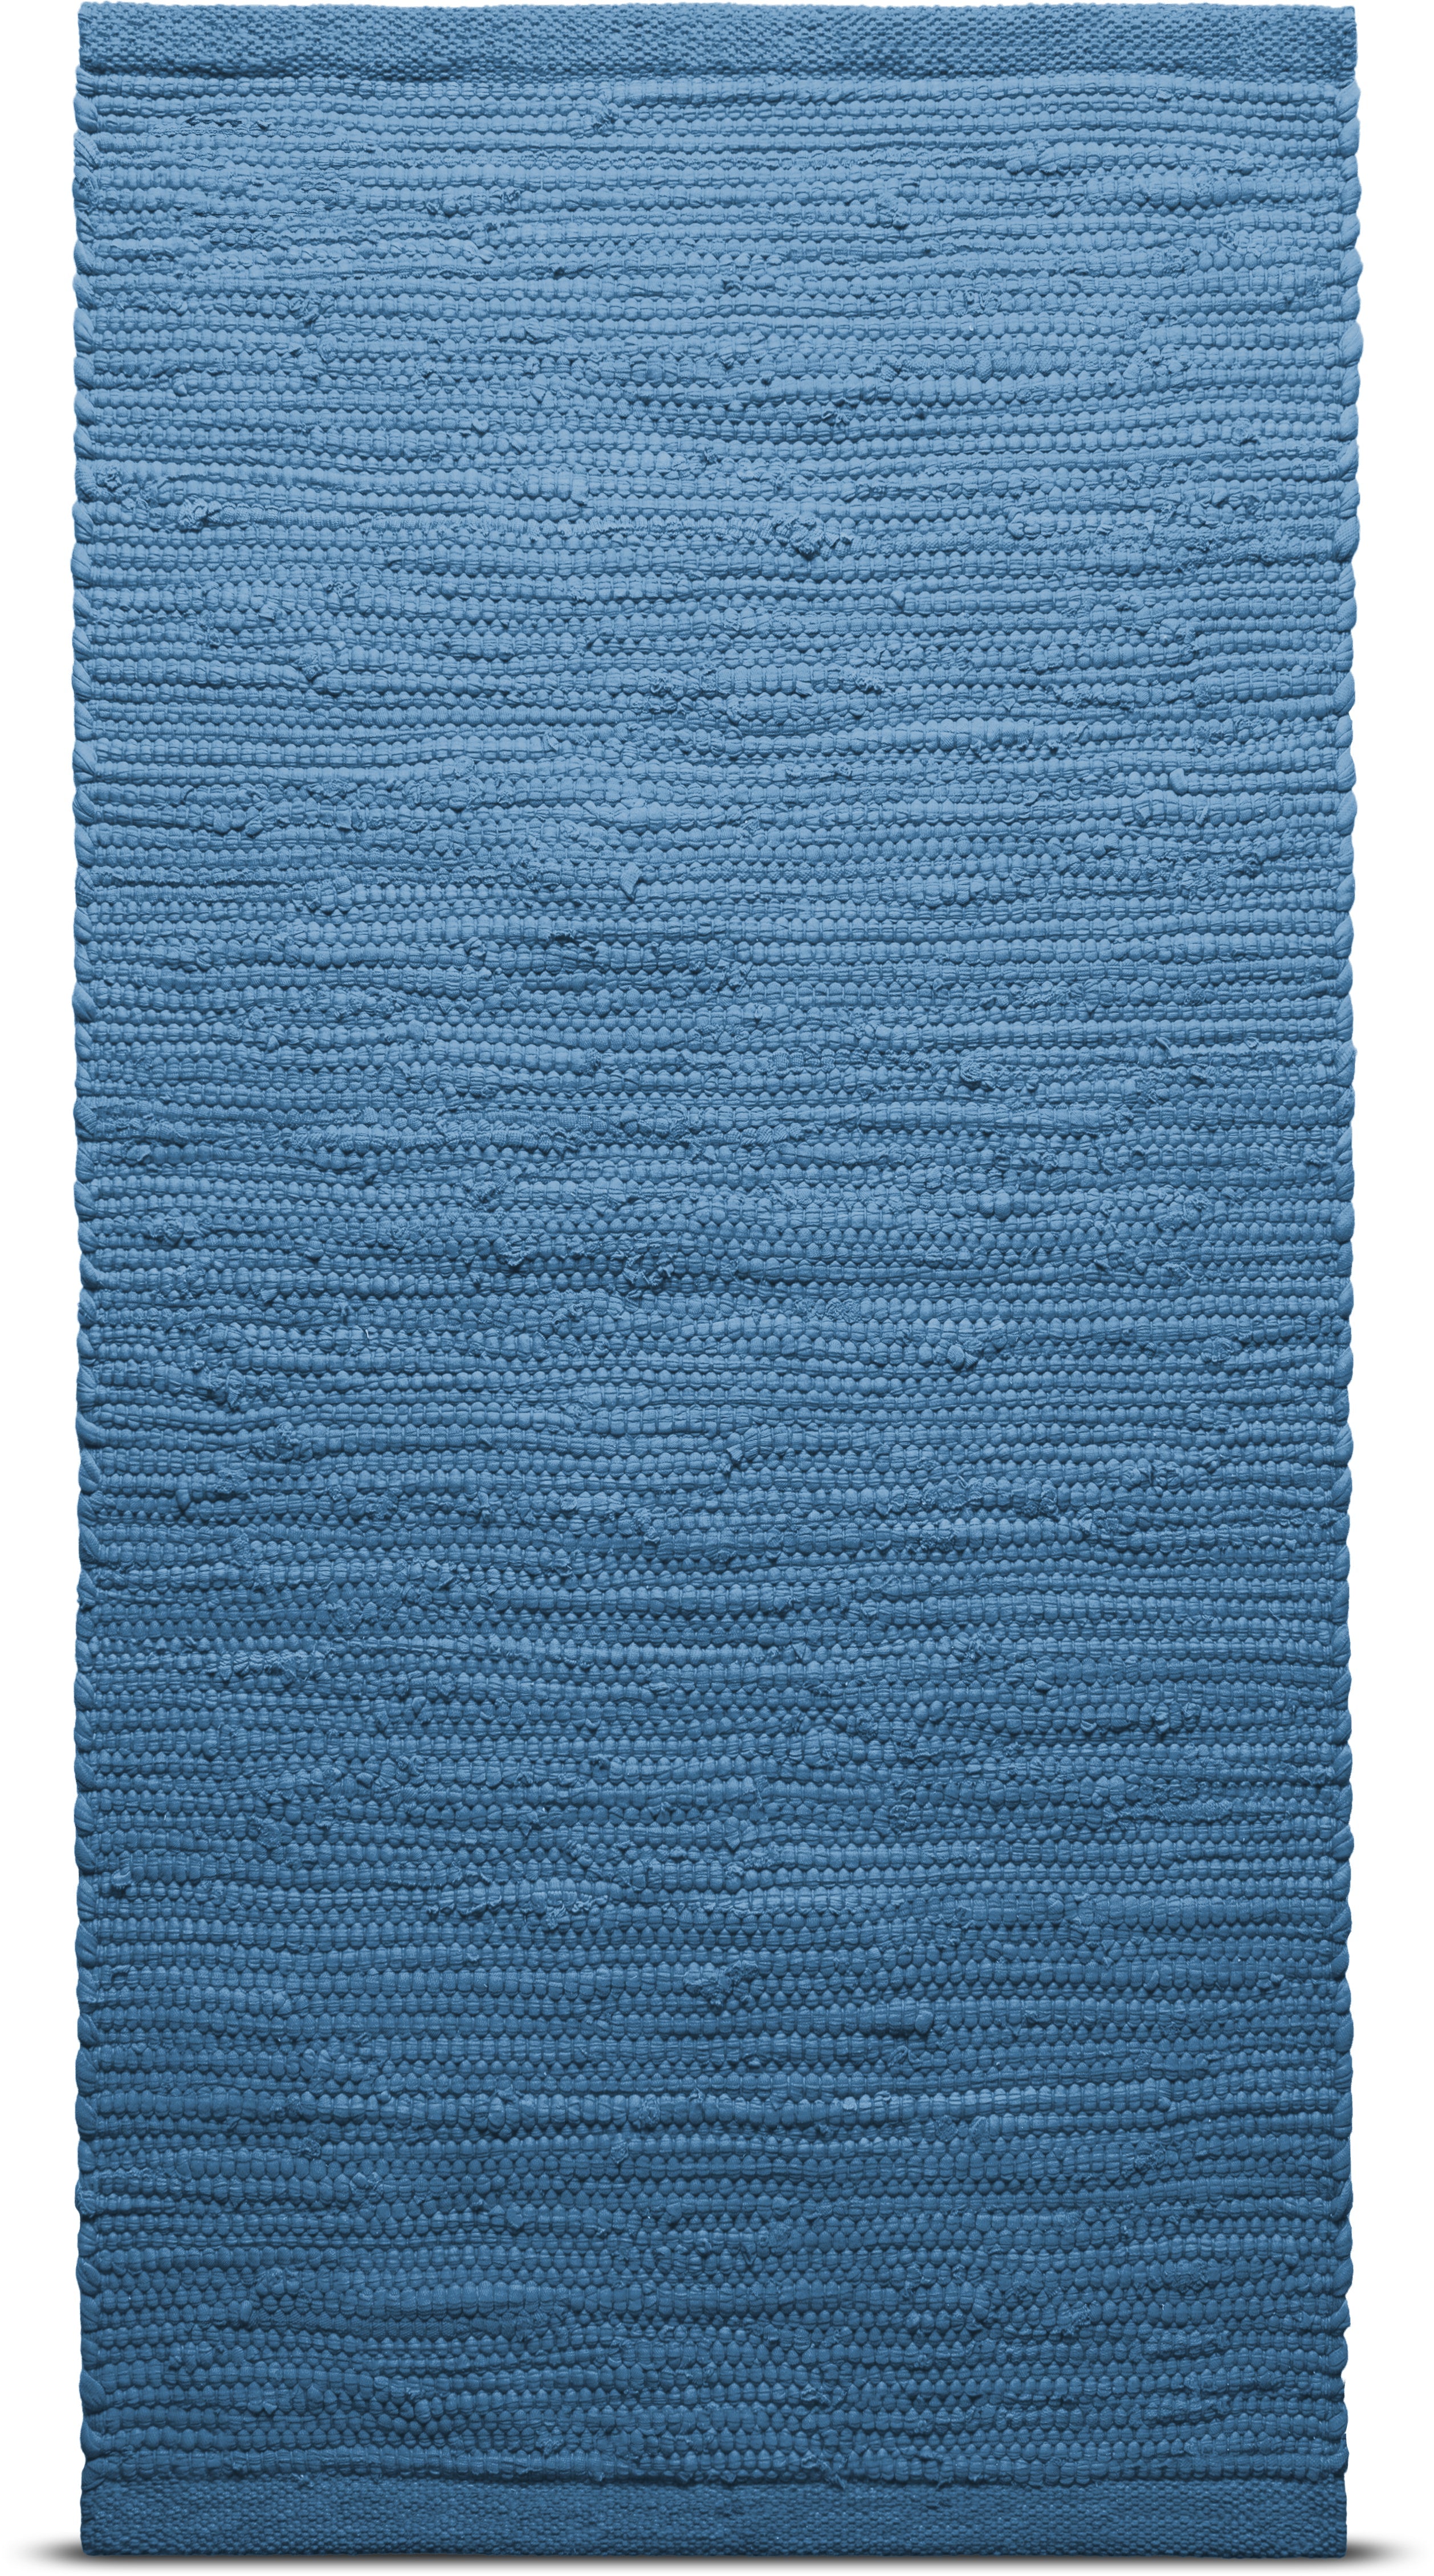 地毯实心棉地毯170 x 240厘米，太平洋